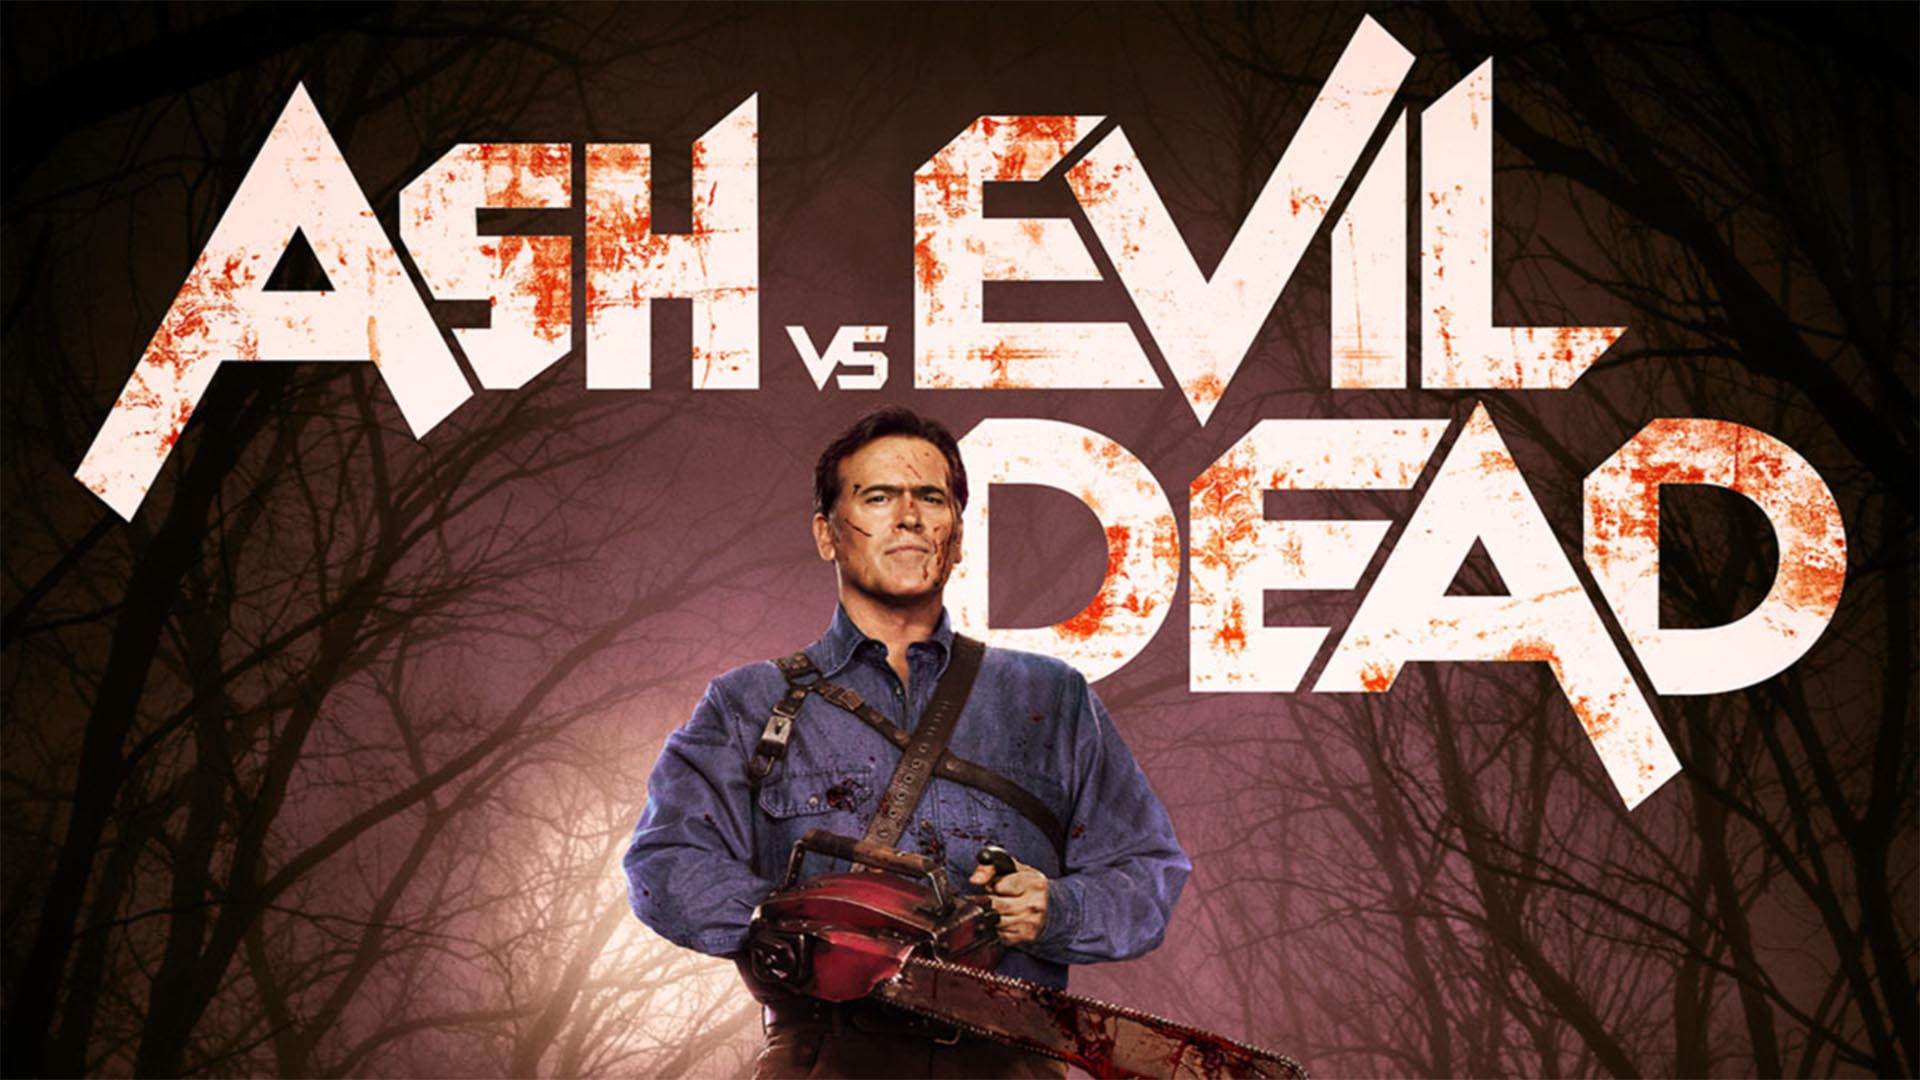 ash vs evil dead e stata ufficialmente cancellata